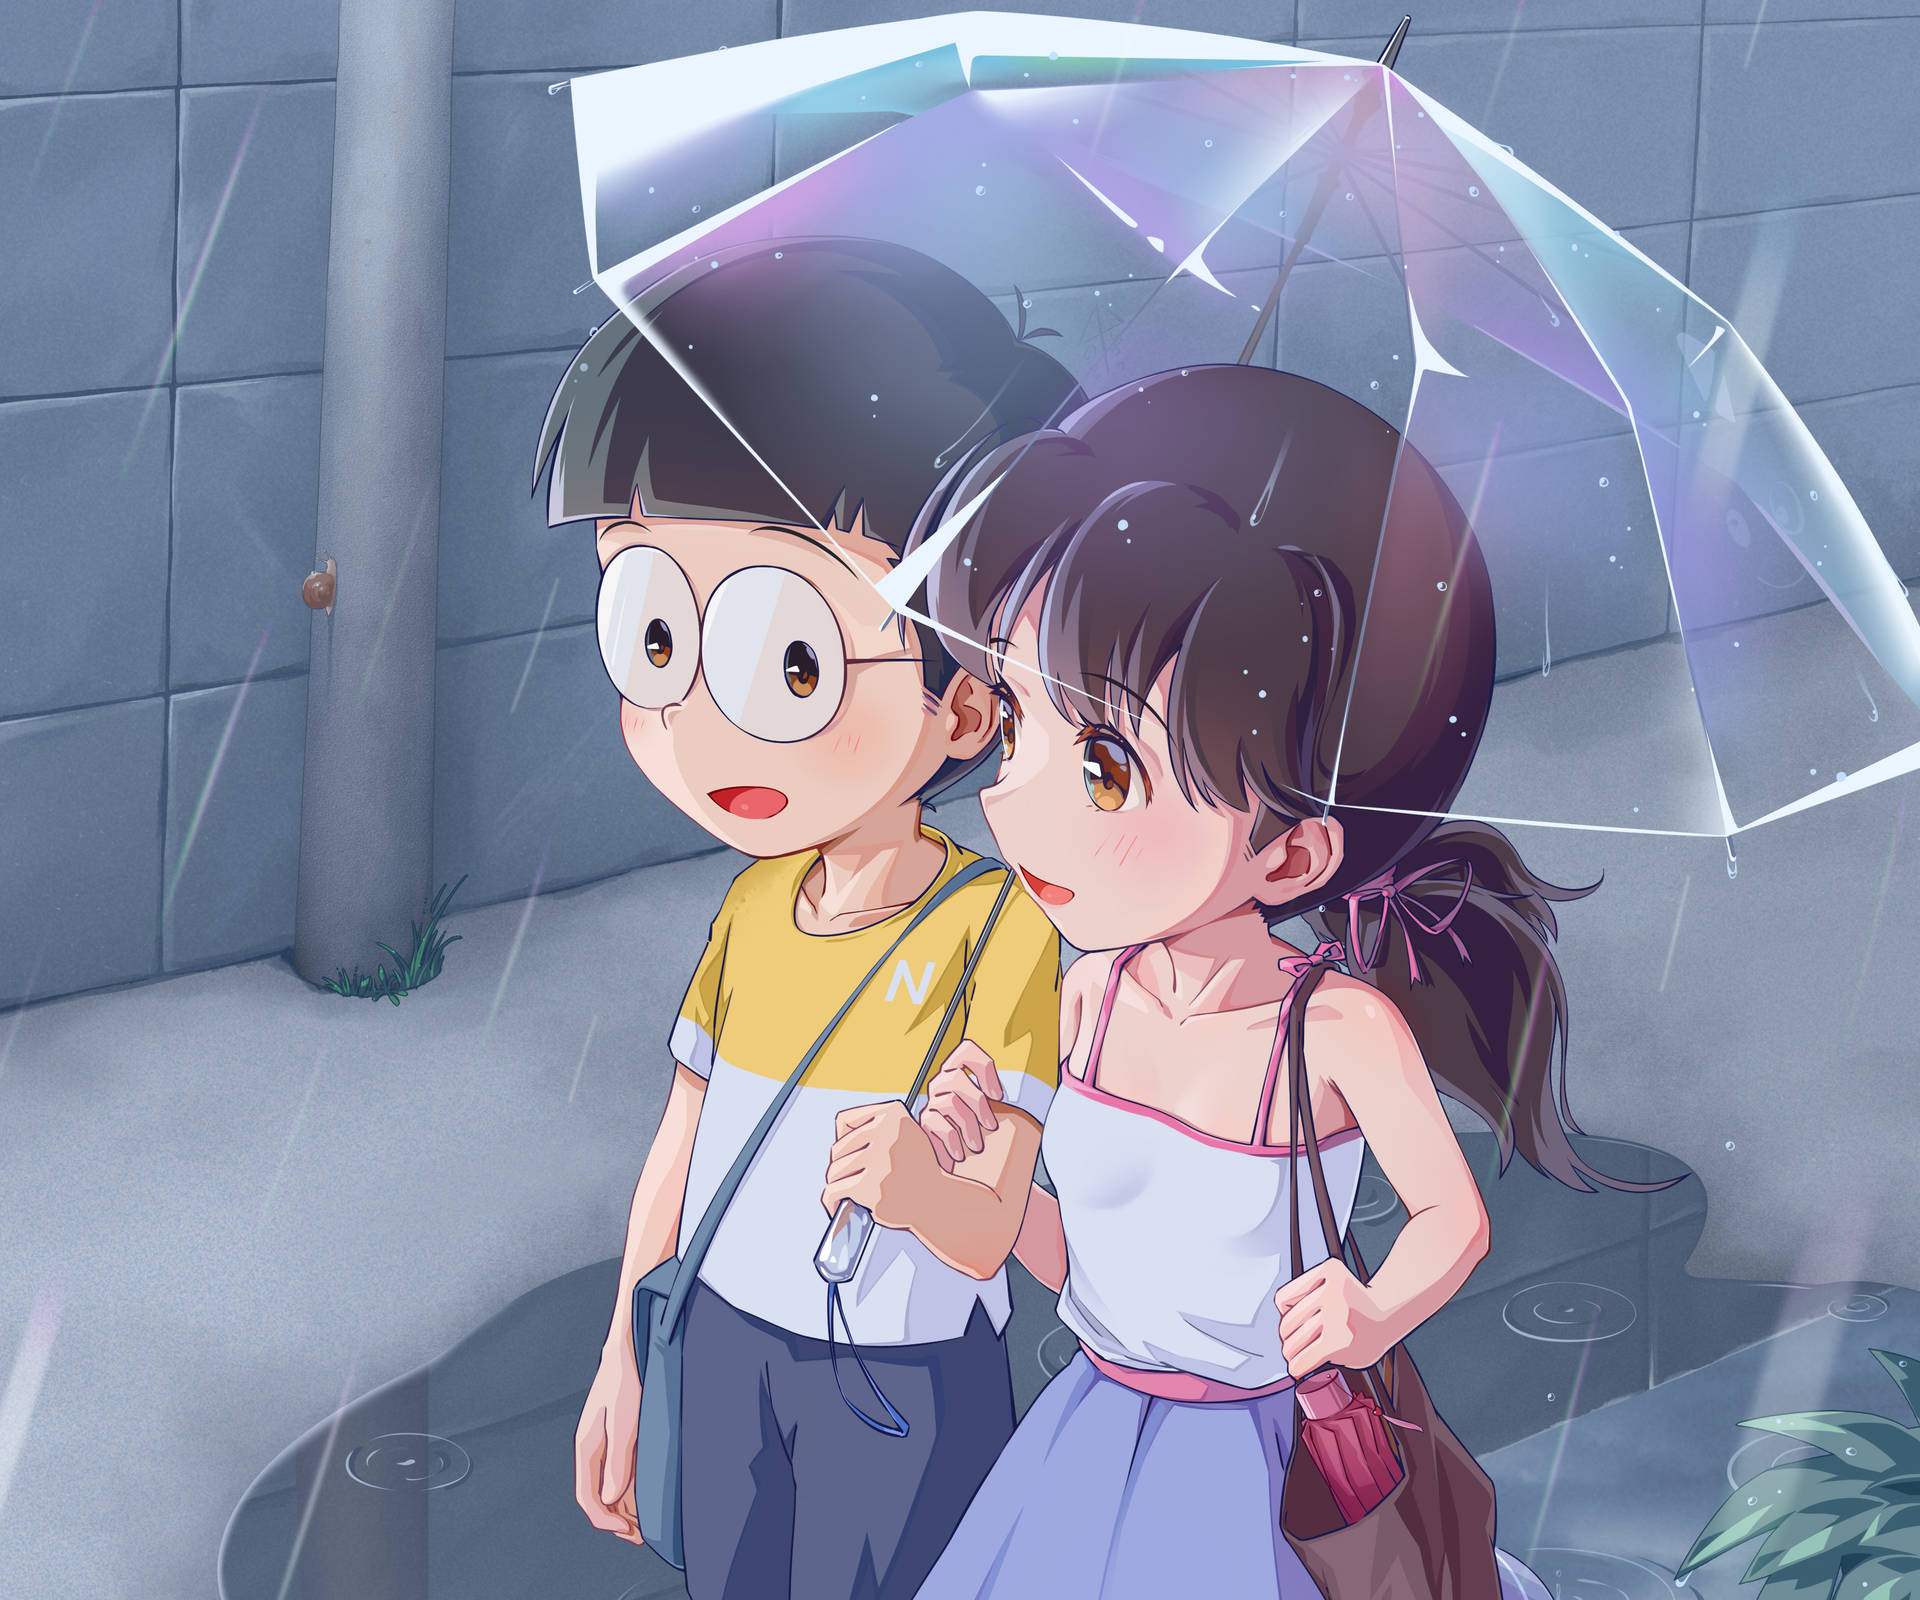 Nobita Shizuka Love Story While Raining